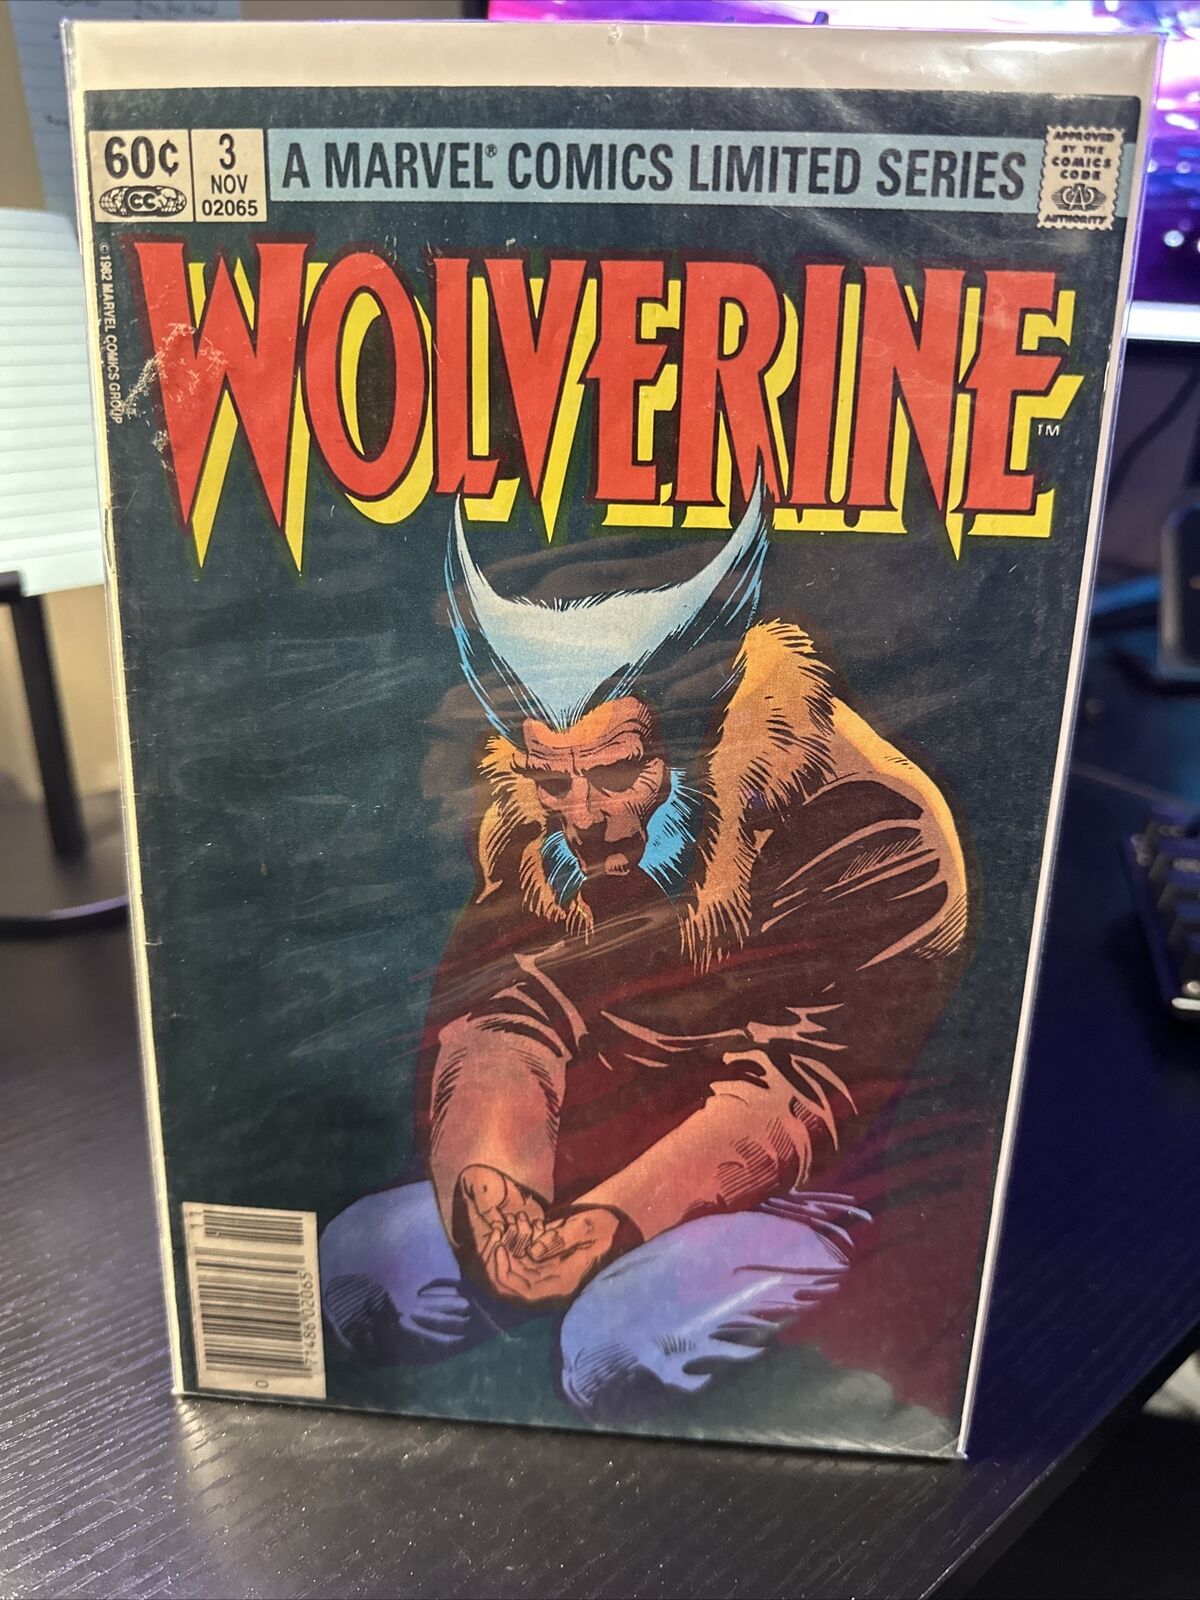 Wolverine Vol 1 Issue 3